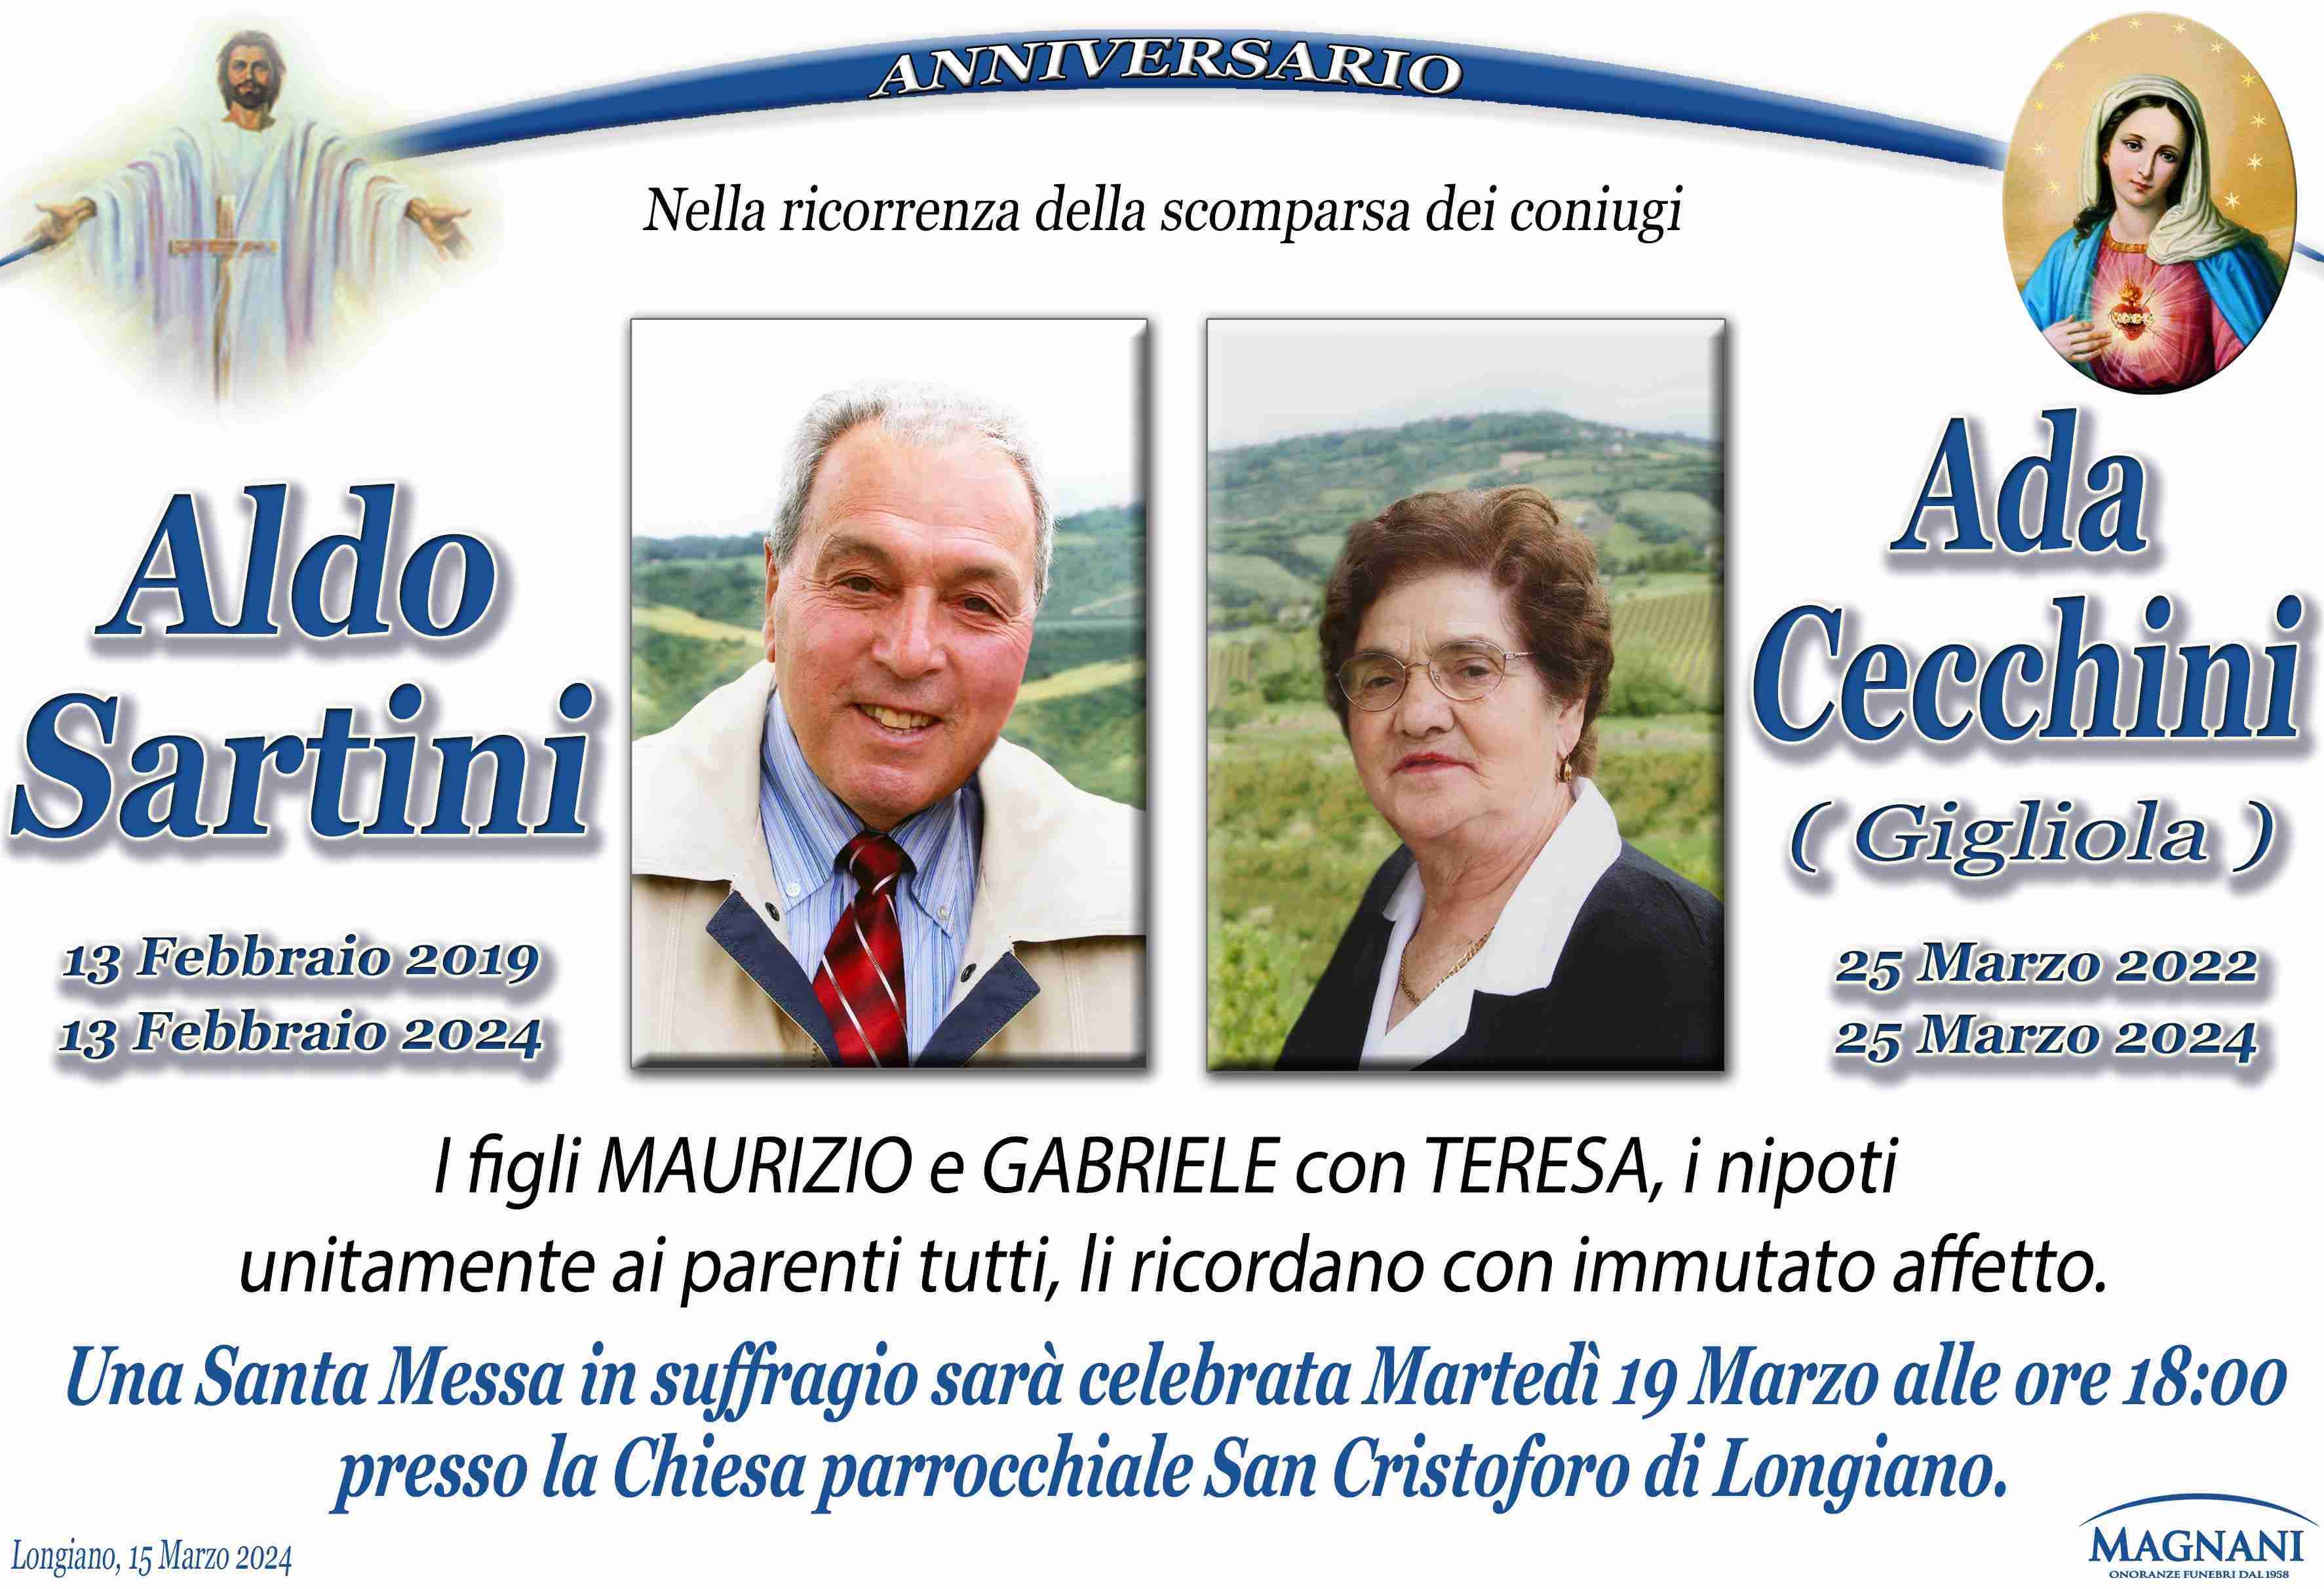 Aldo Sartini e Ada Cecchini